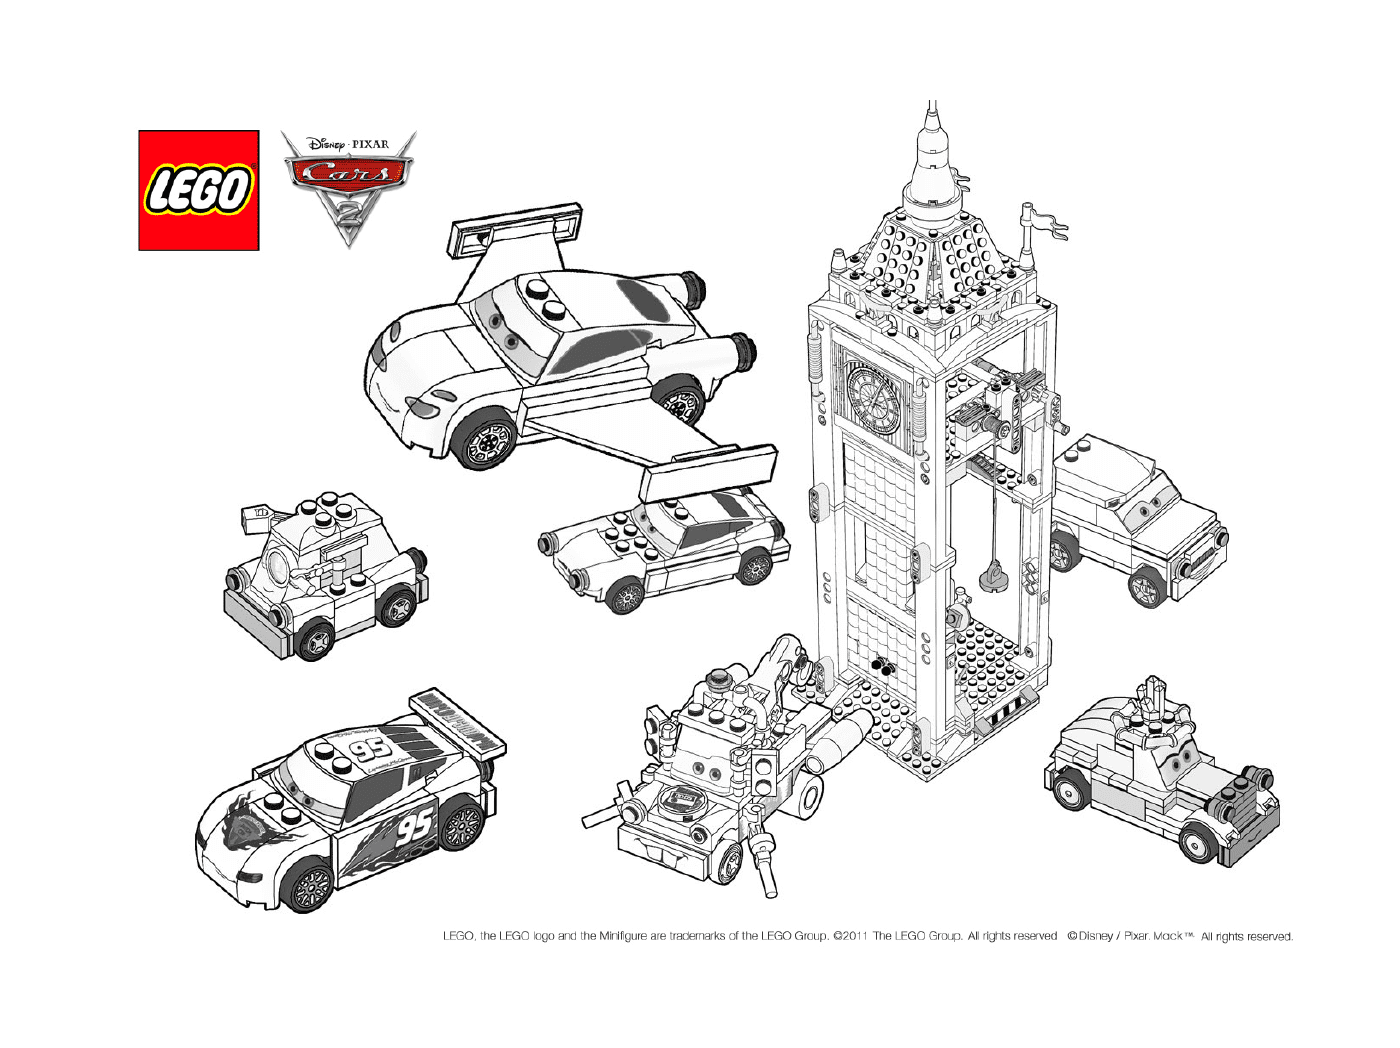  Lego Cars 3, der Film 